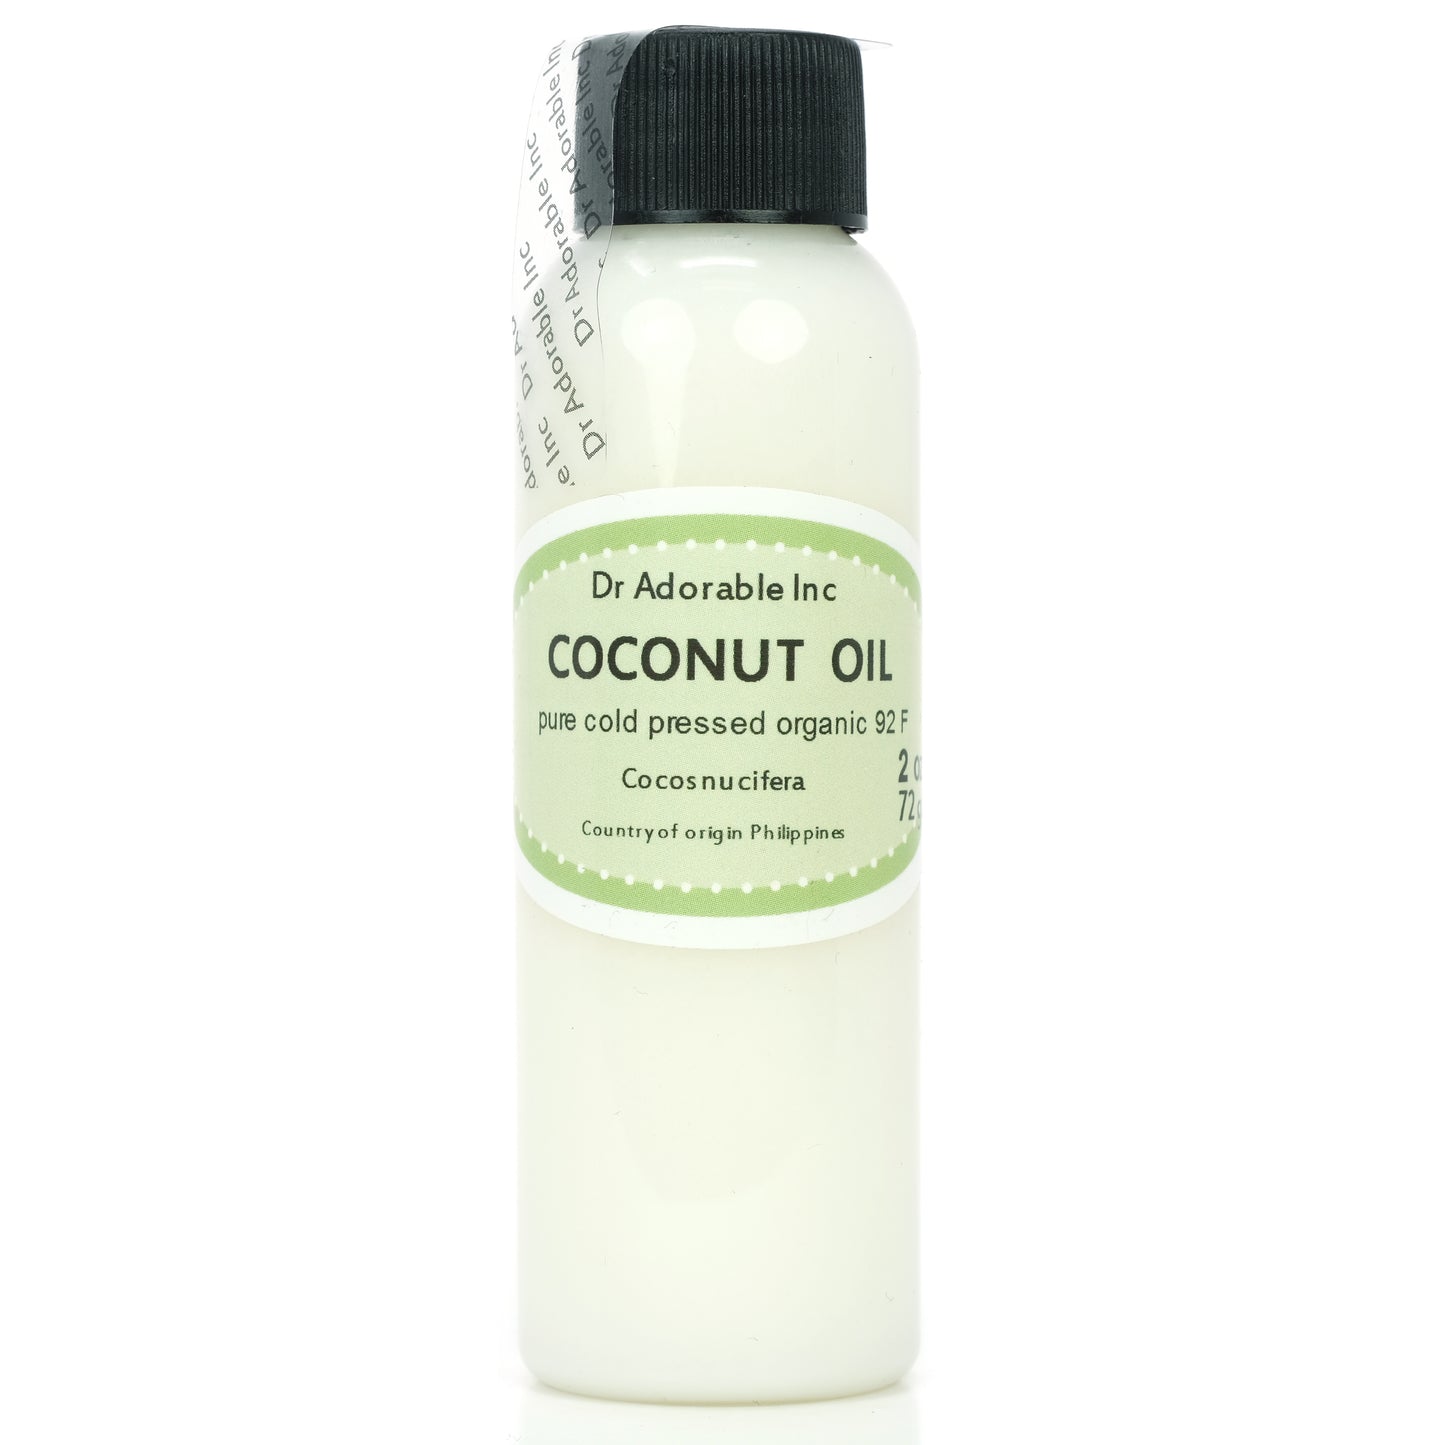 Coconut Oil 92 Degree - 100% Pure Natural Organic Cold Pressed